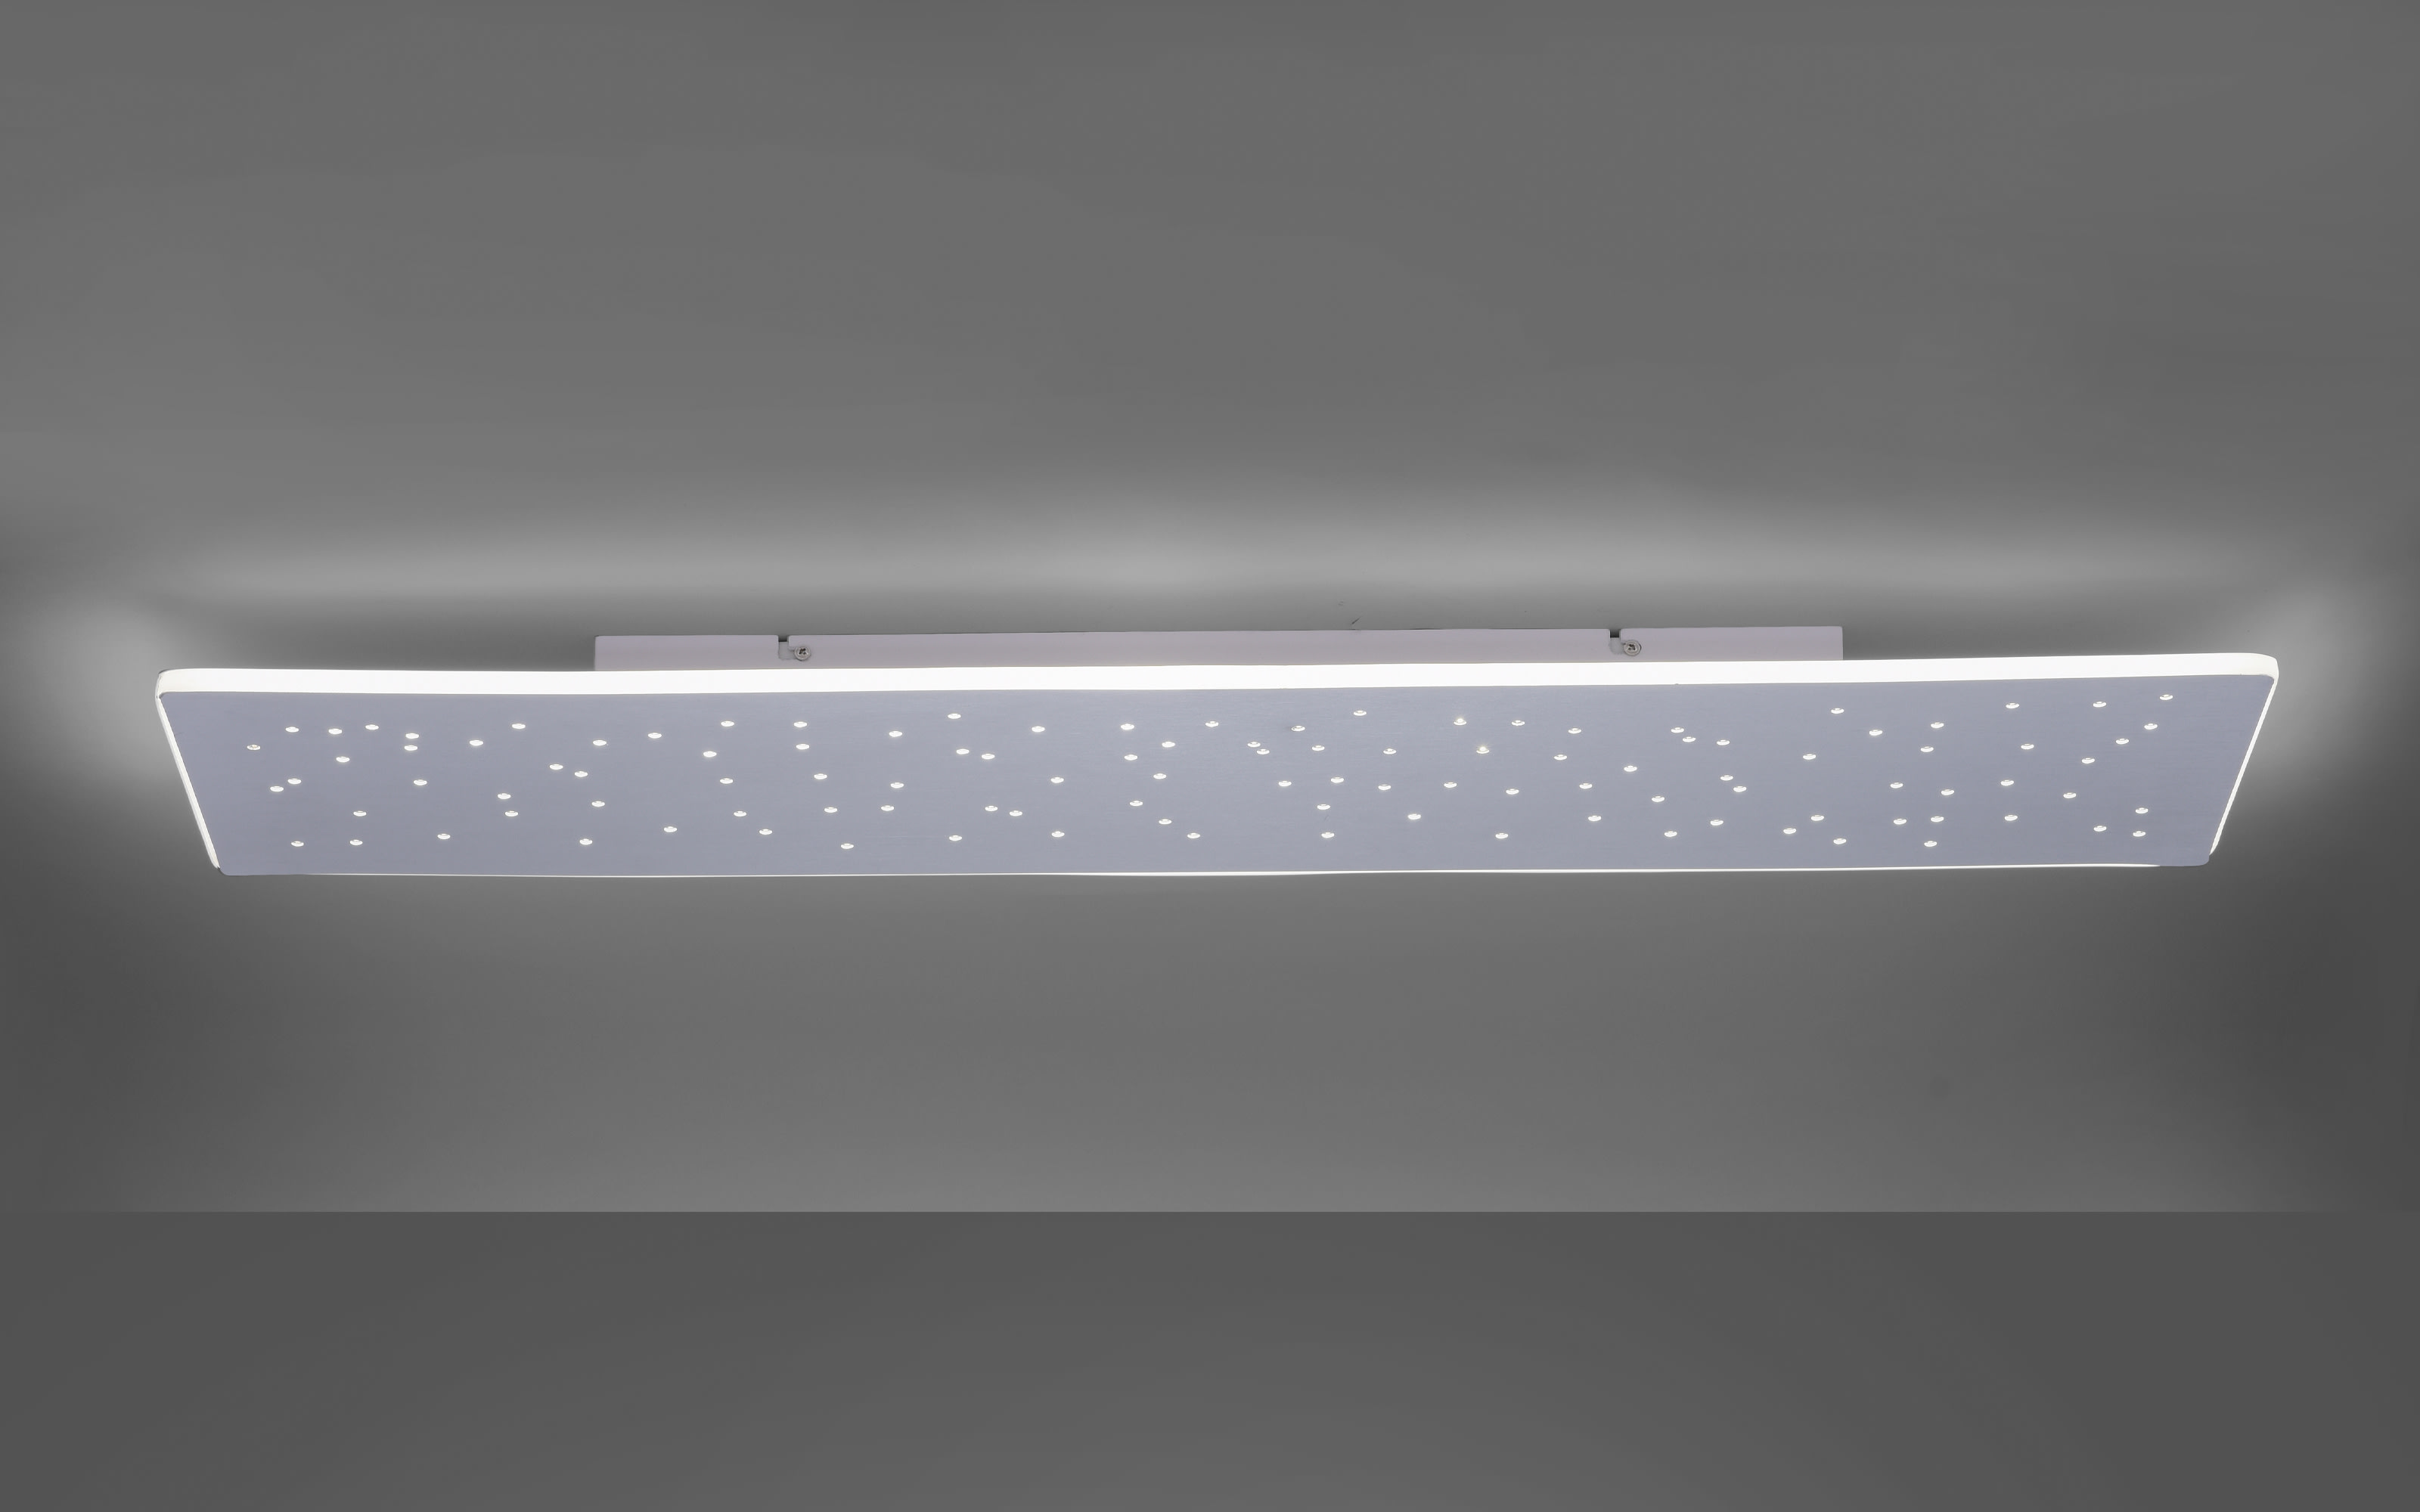 LED-Deckenleuchte Q-Nightsky, 100 x 25,5 cm